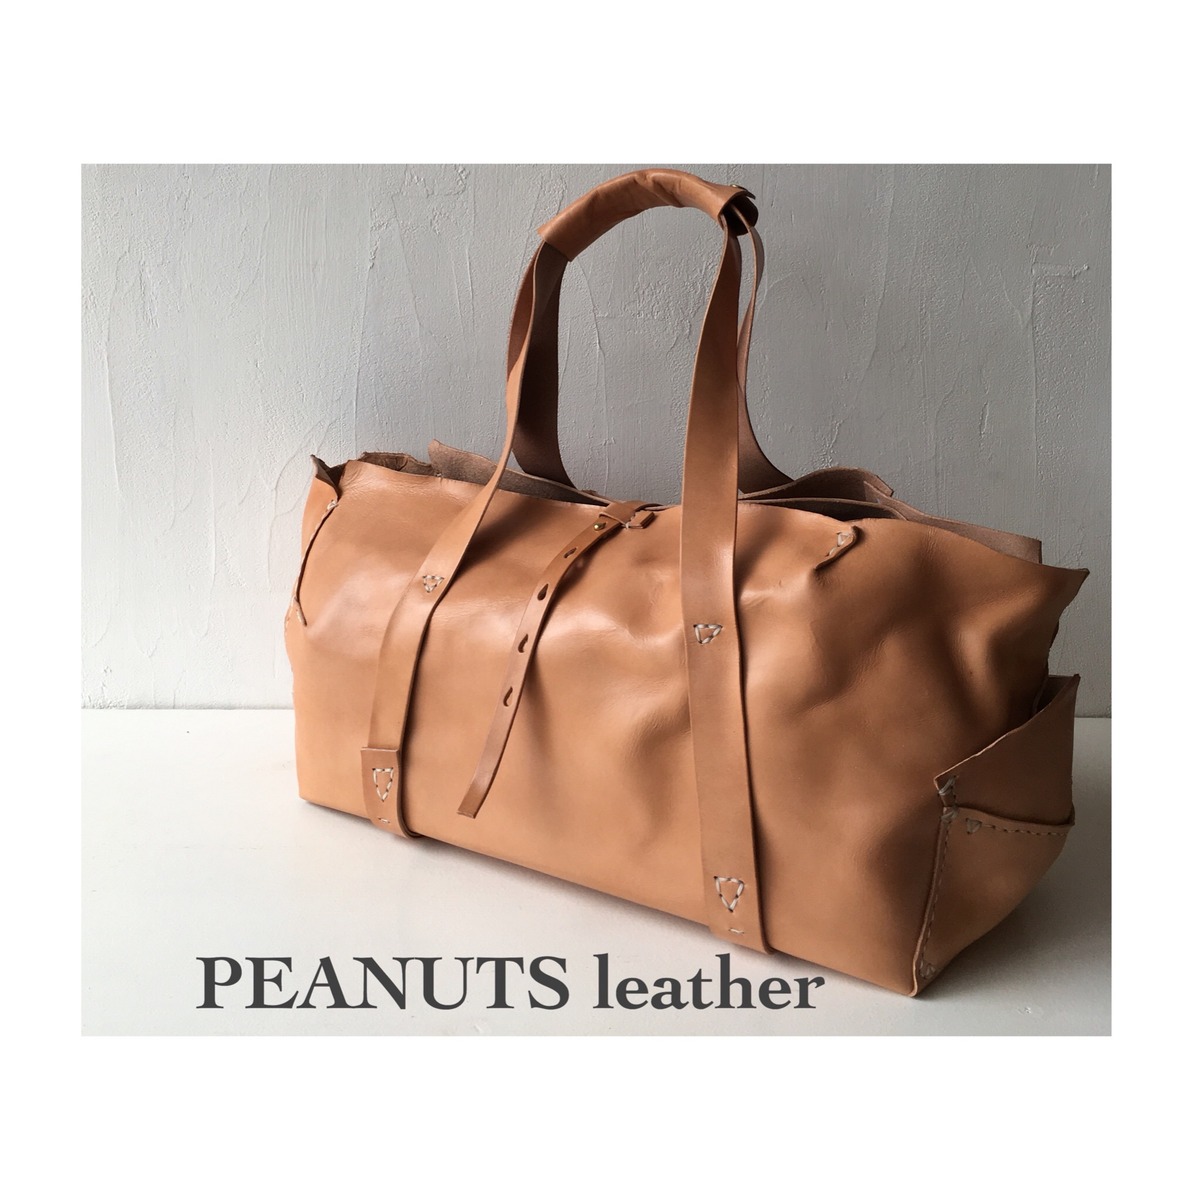 peanuts leather